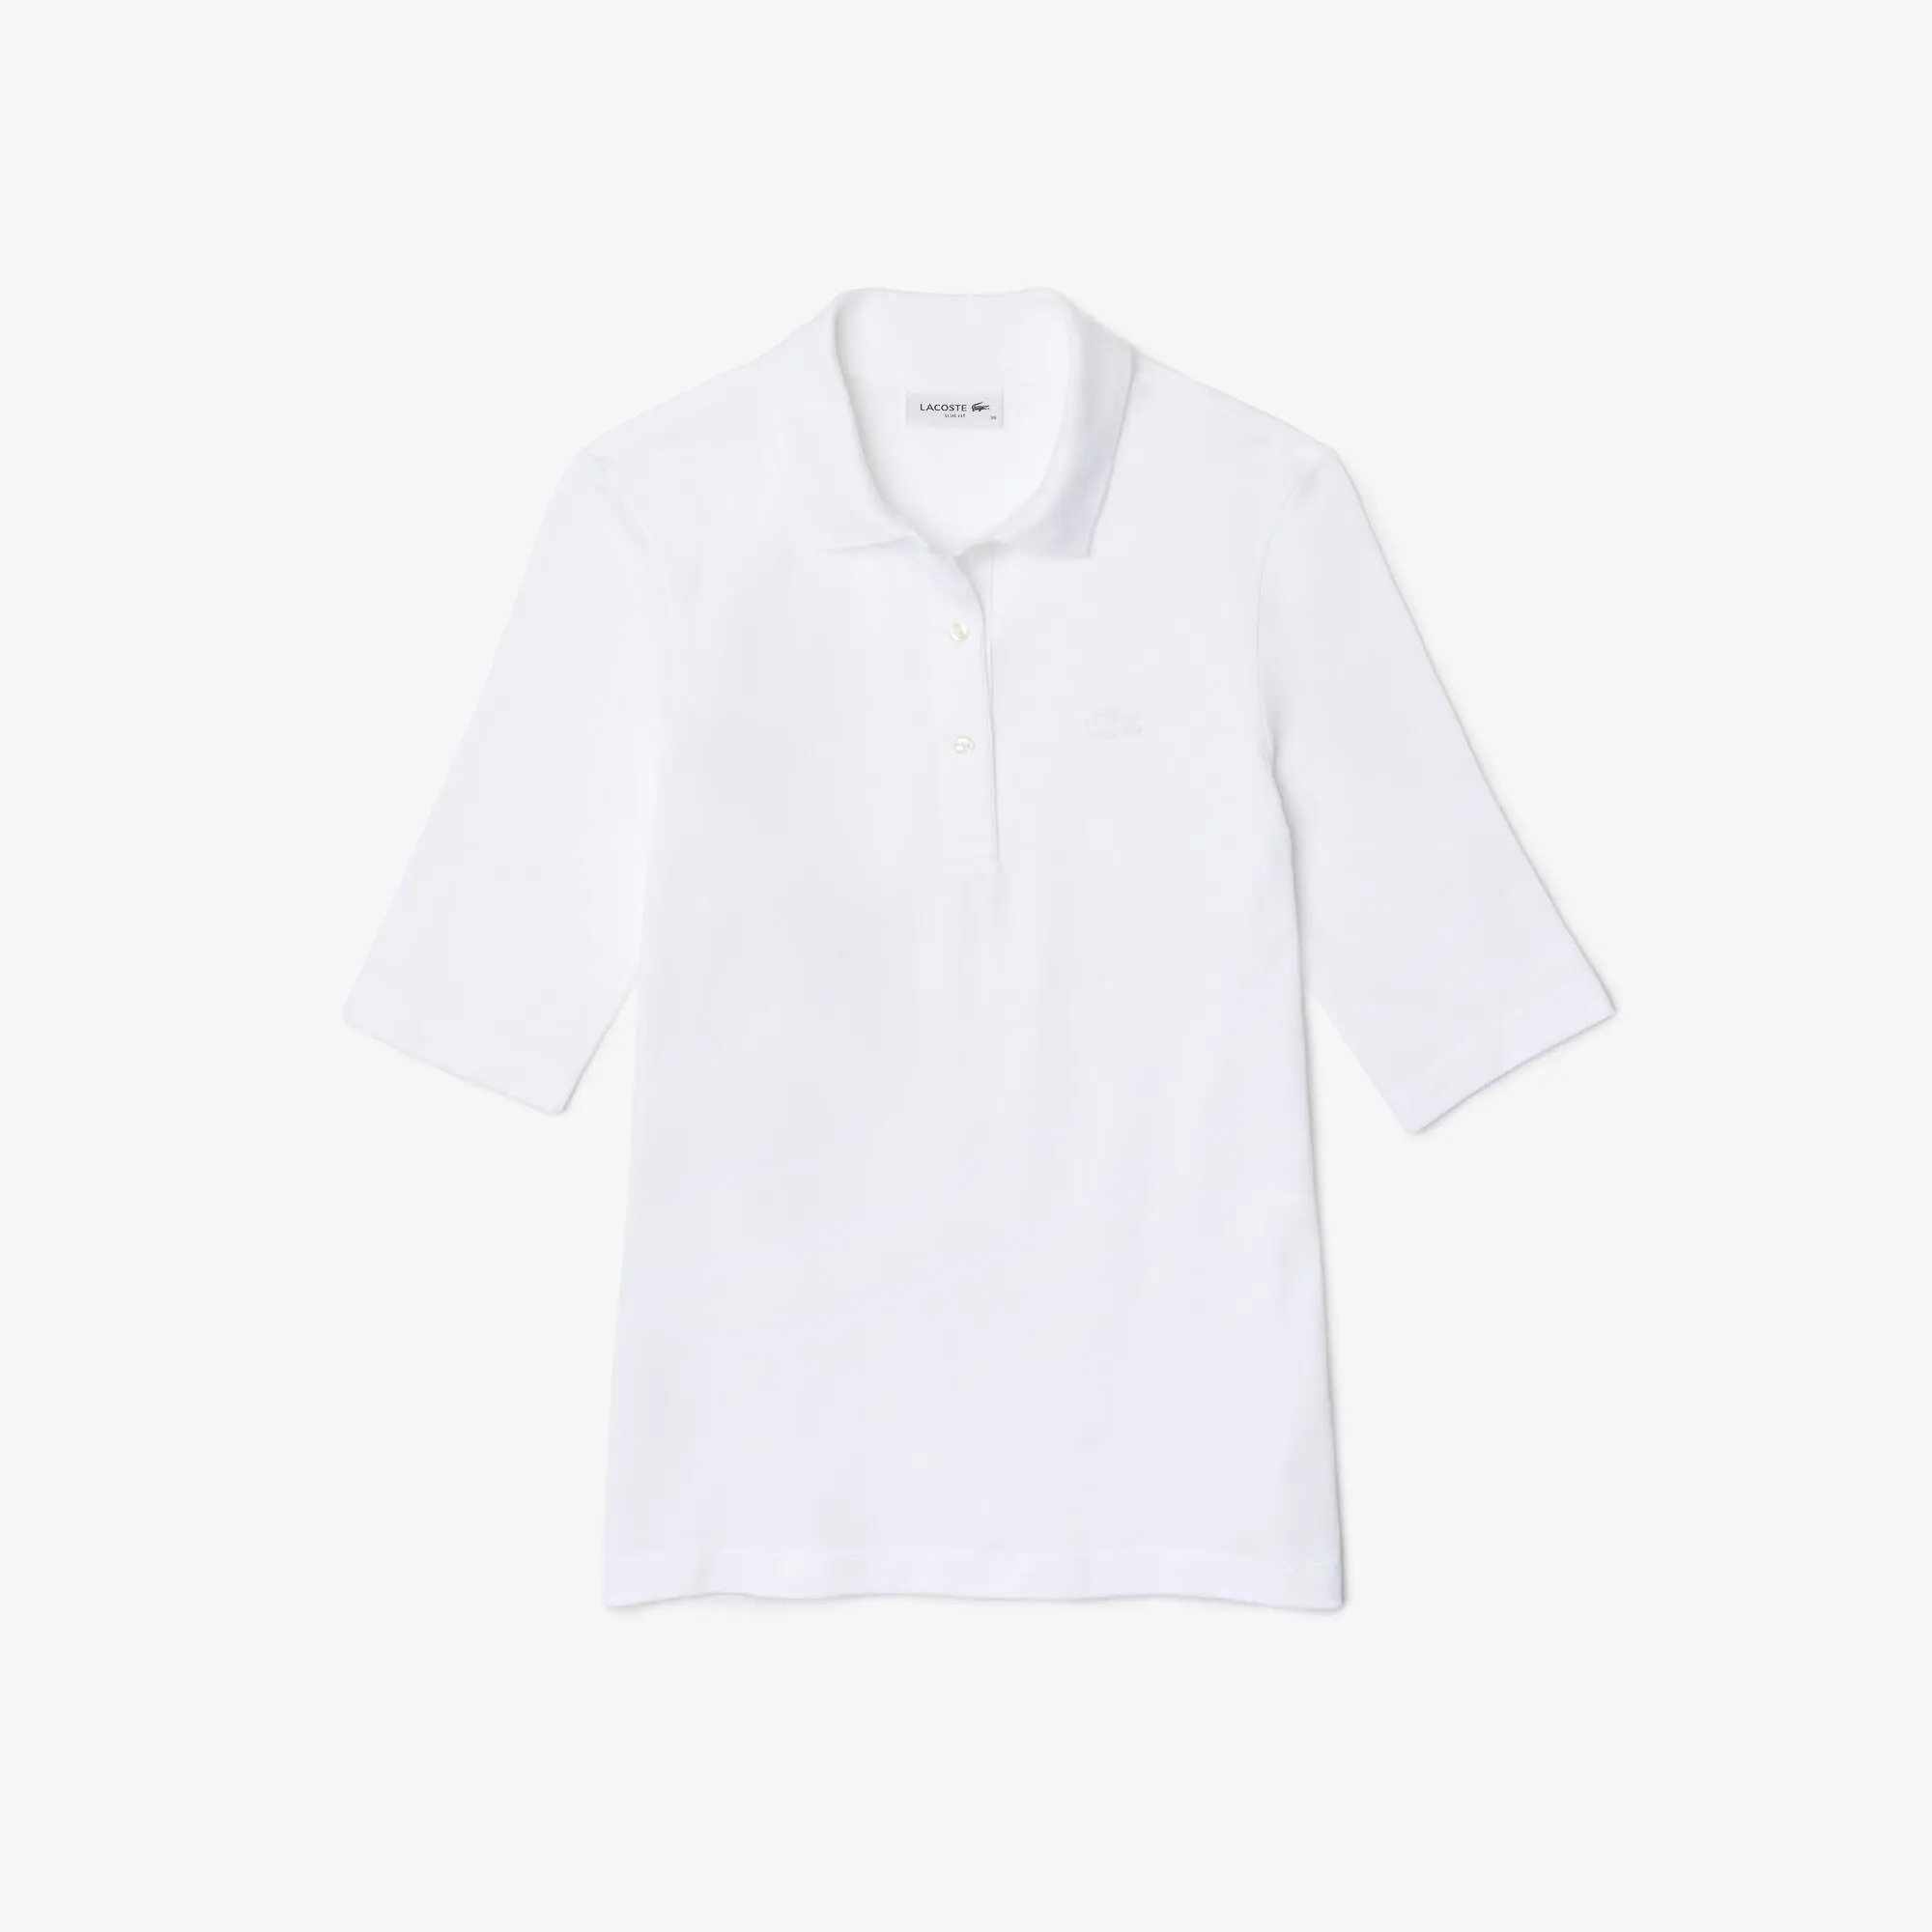 Lacoste Women's Lacoste Slim Fit Supple Cotton Polo Shirt. 2